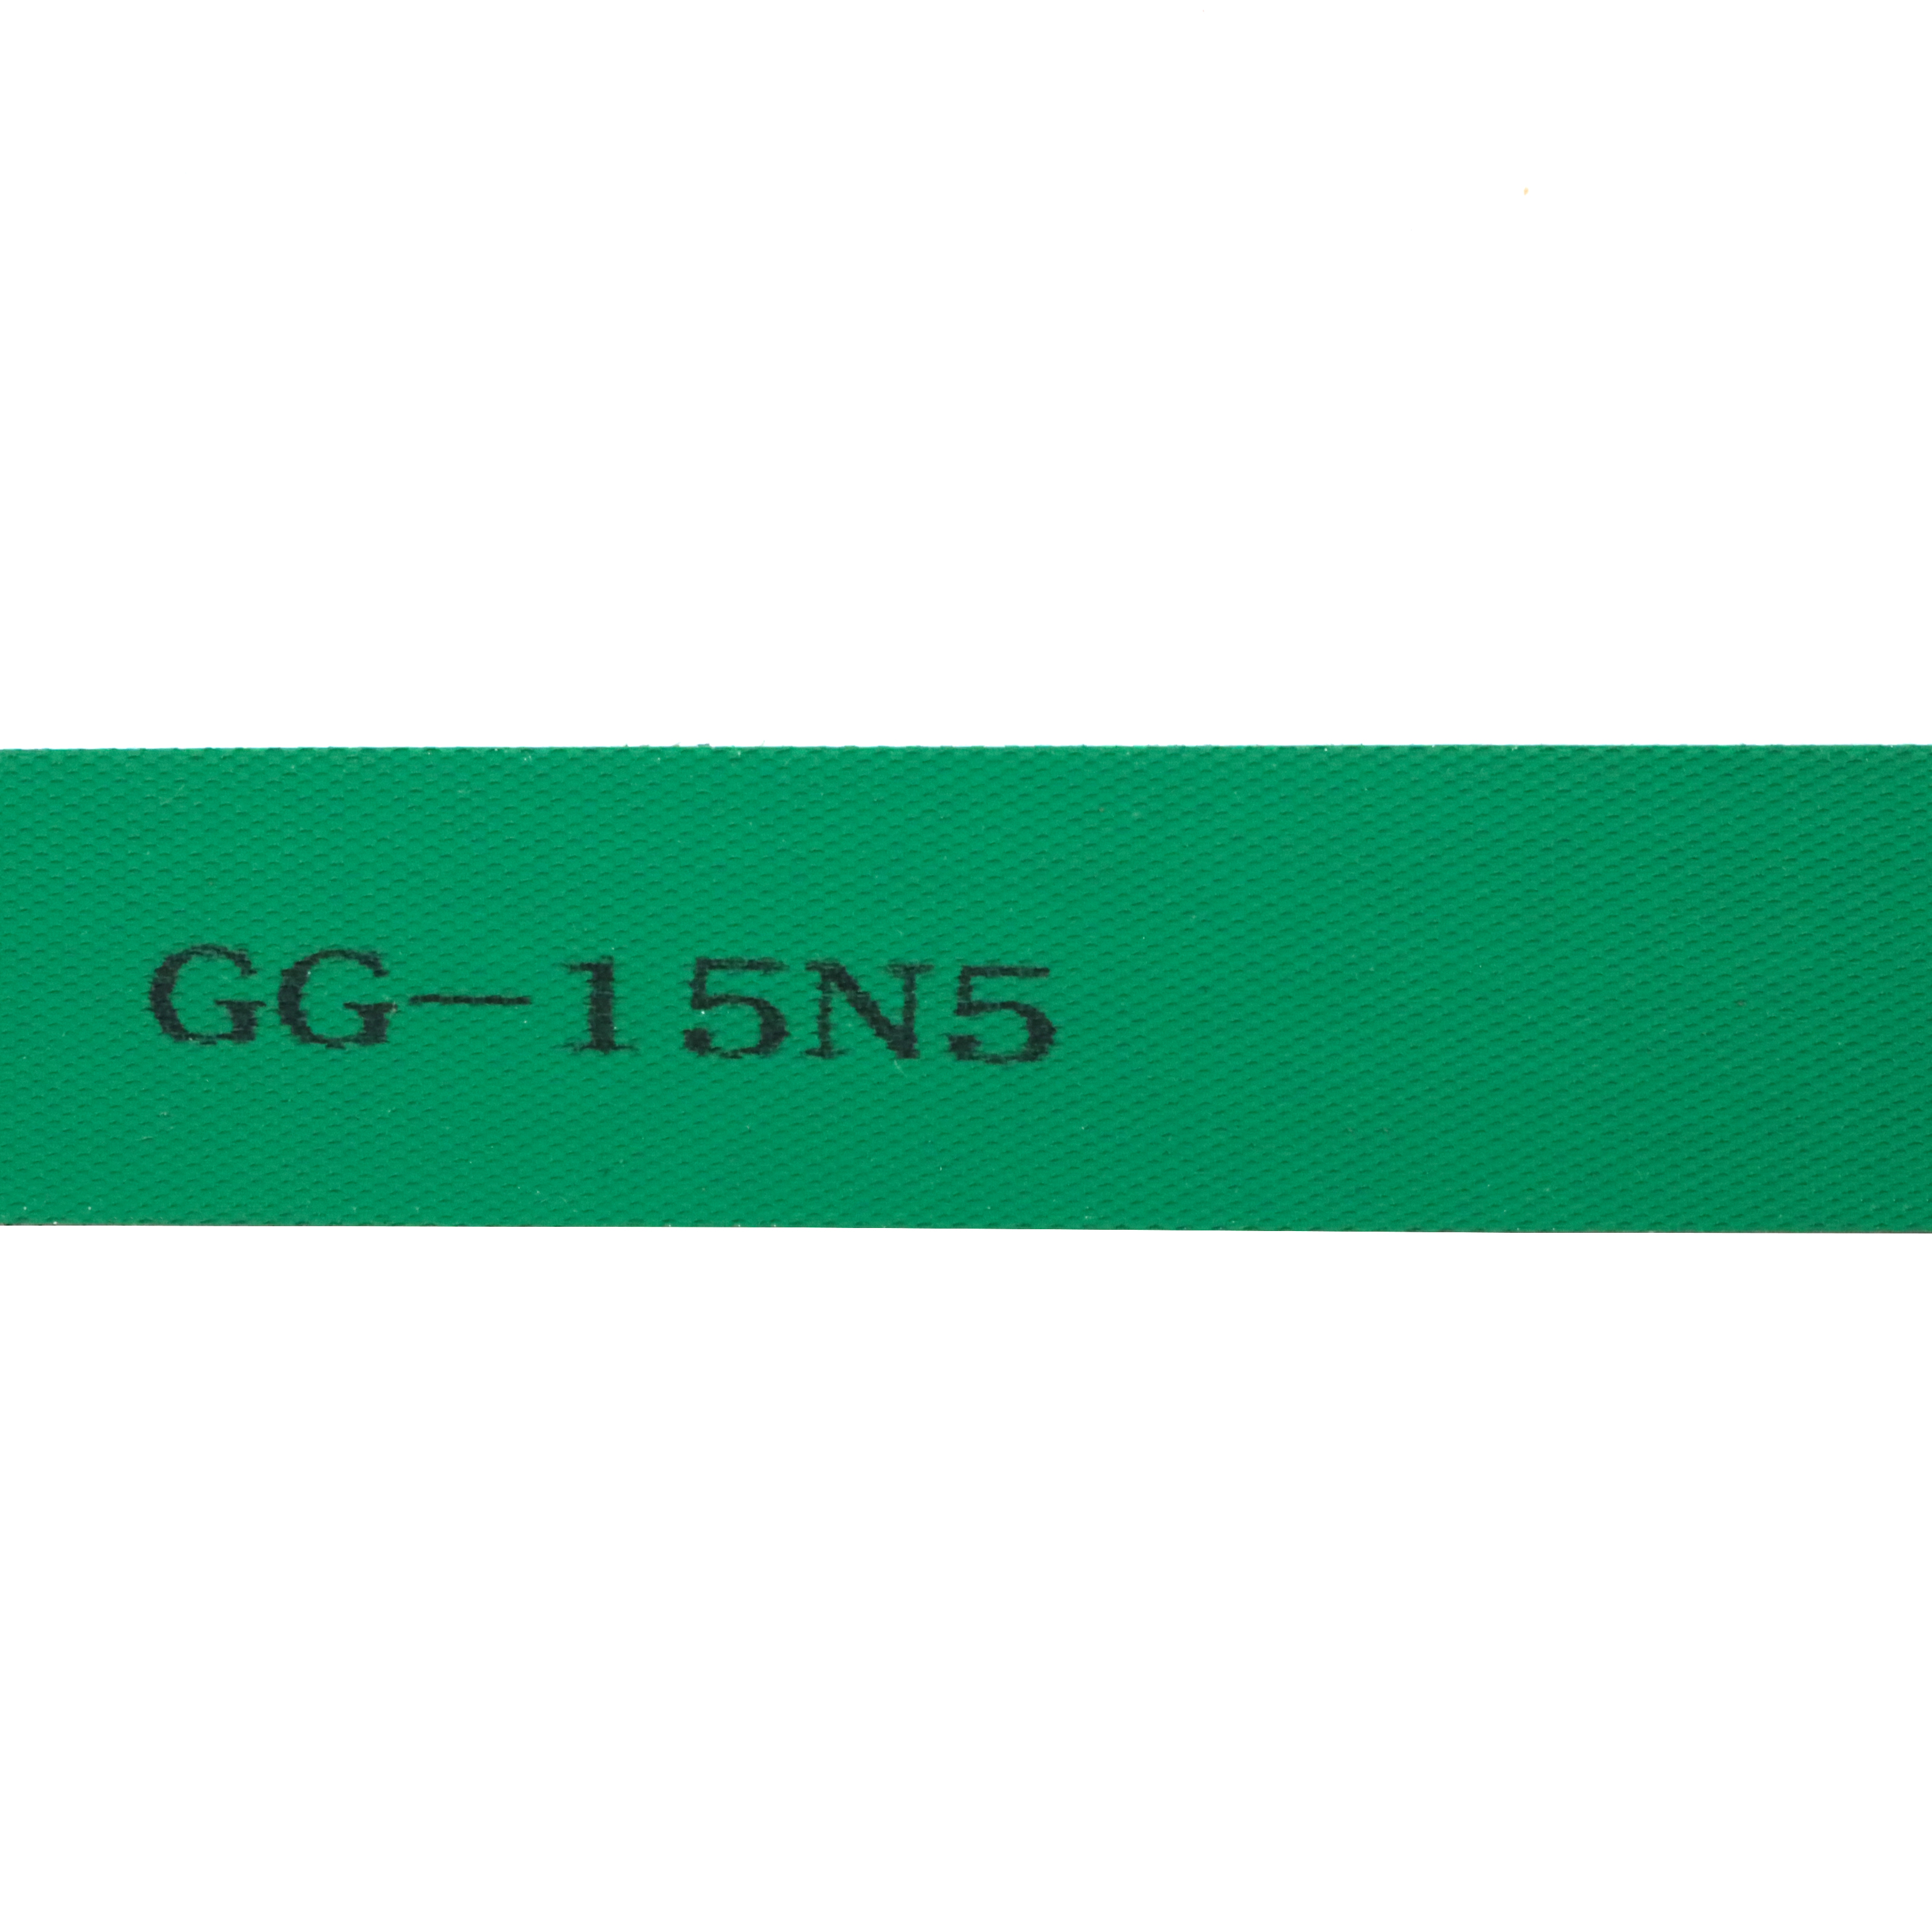 GG-15N5